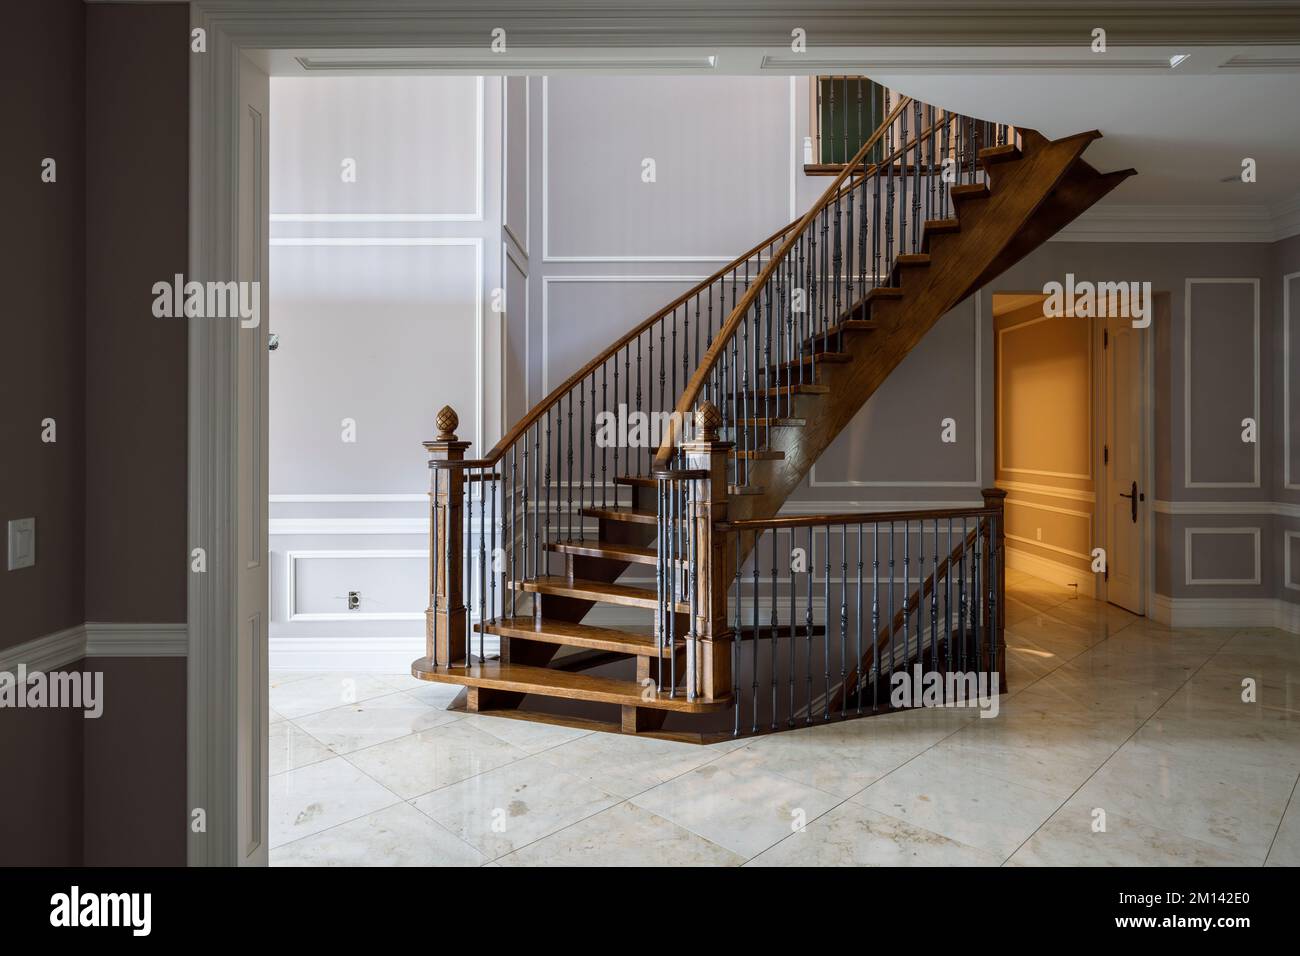 Escaliers à enrouleur fantaisie construits en bois avec des balustres en acier à l'intérieur d'une grande maison. Cette maison a depuis été démolie. Banque D'Images